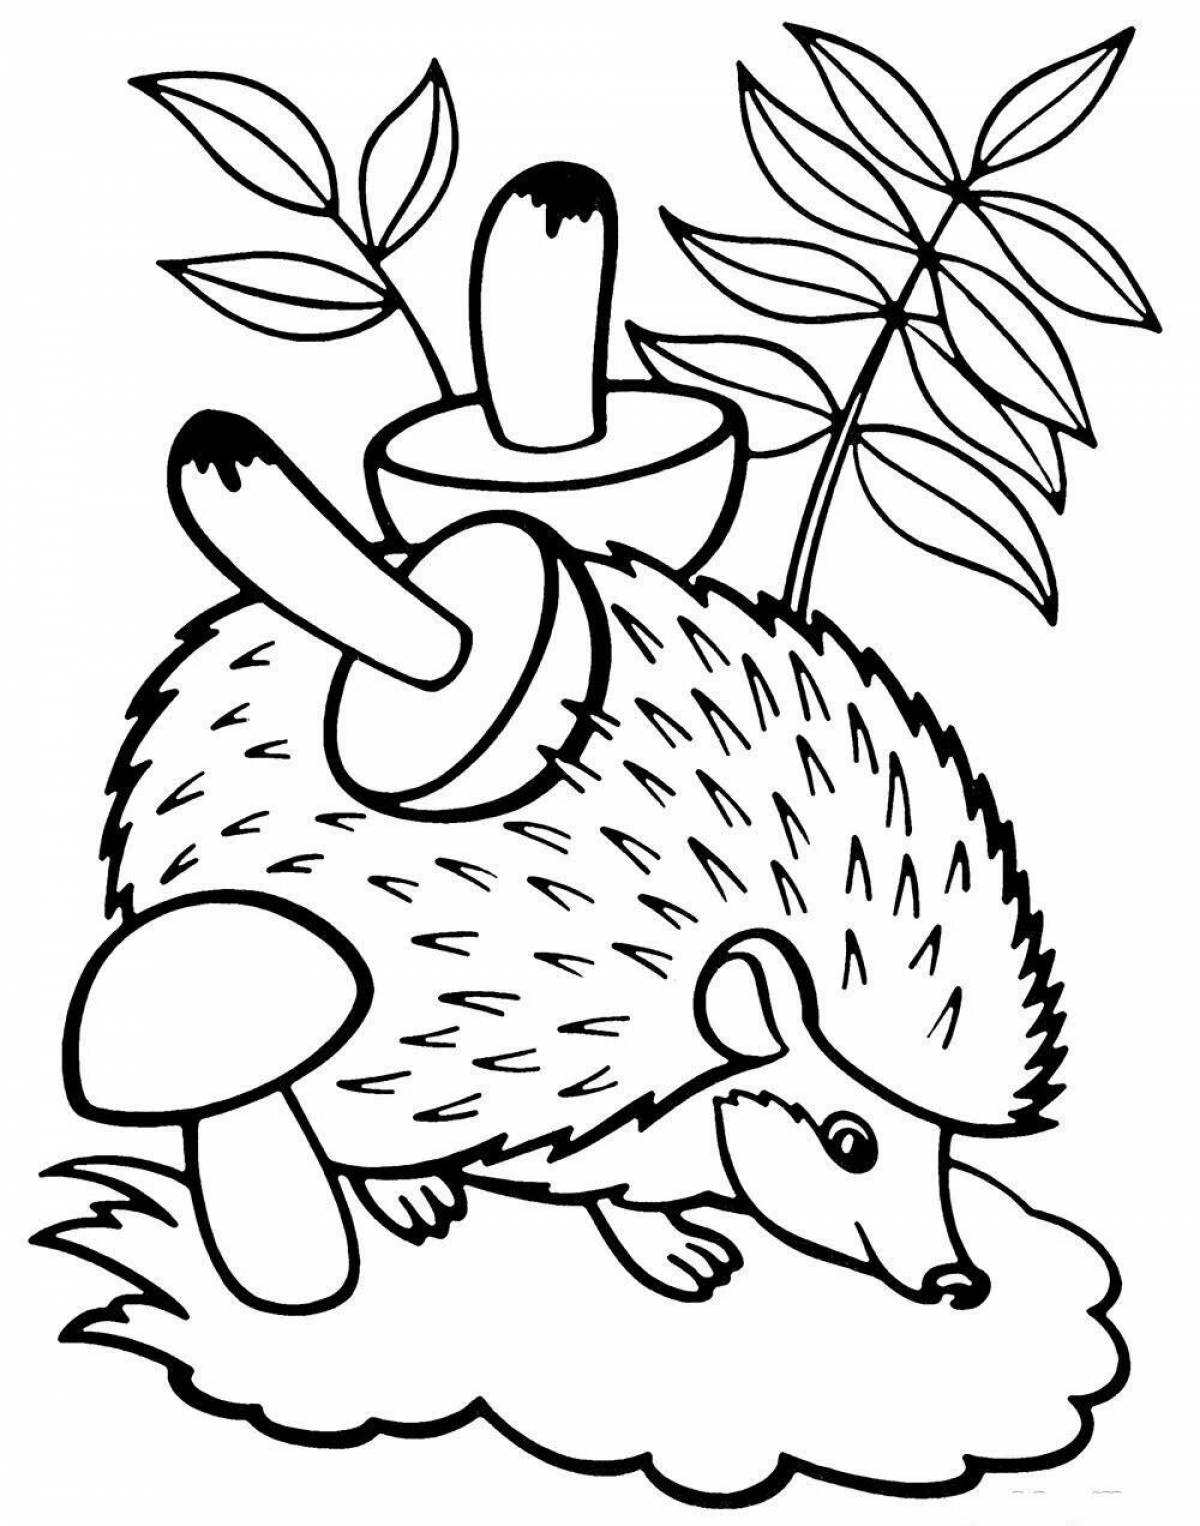 Dazzling hedgehog preschool coloring book